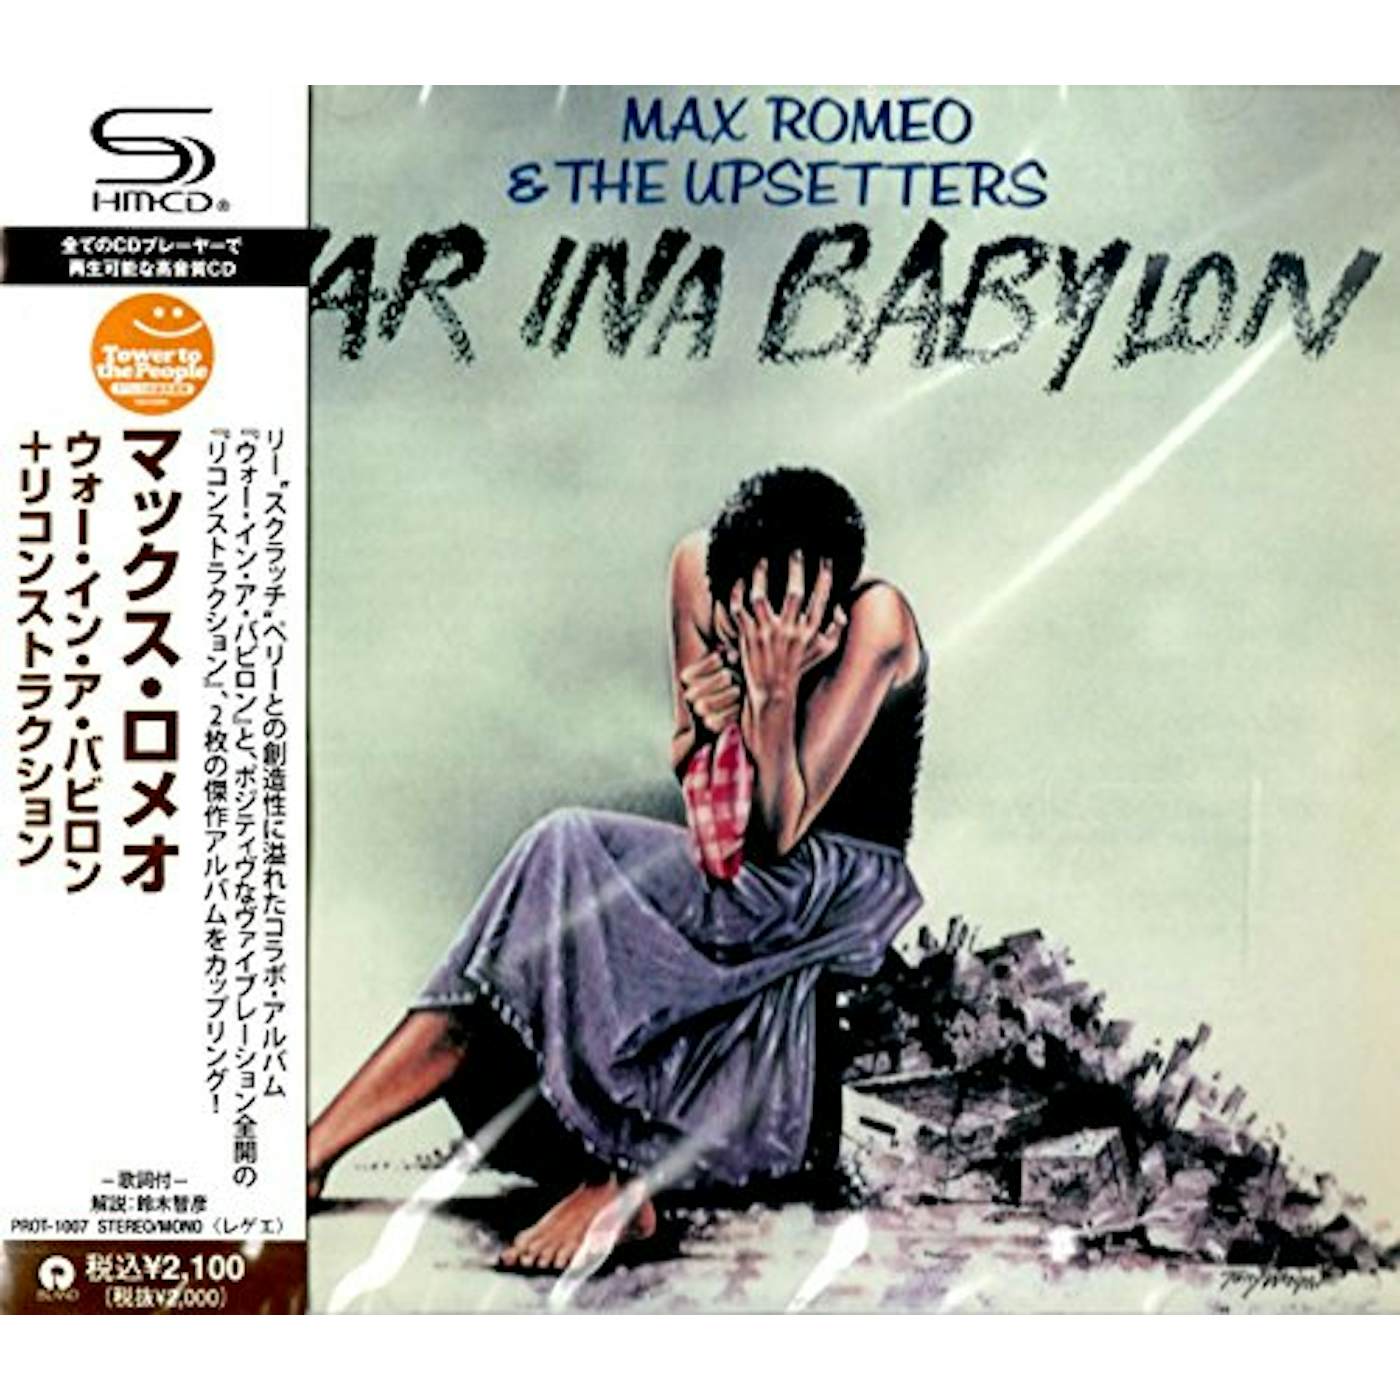 Max Romeo WAR IN A BABYLON CD